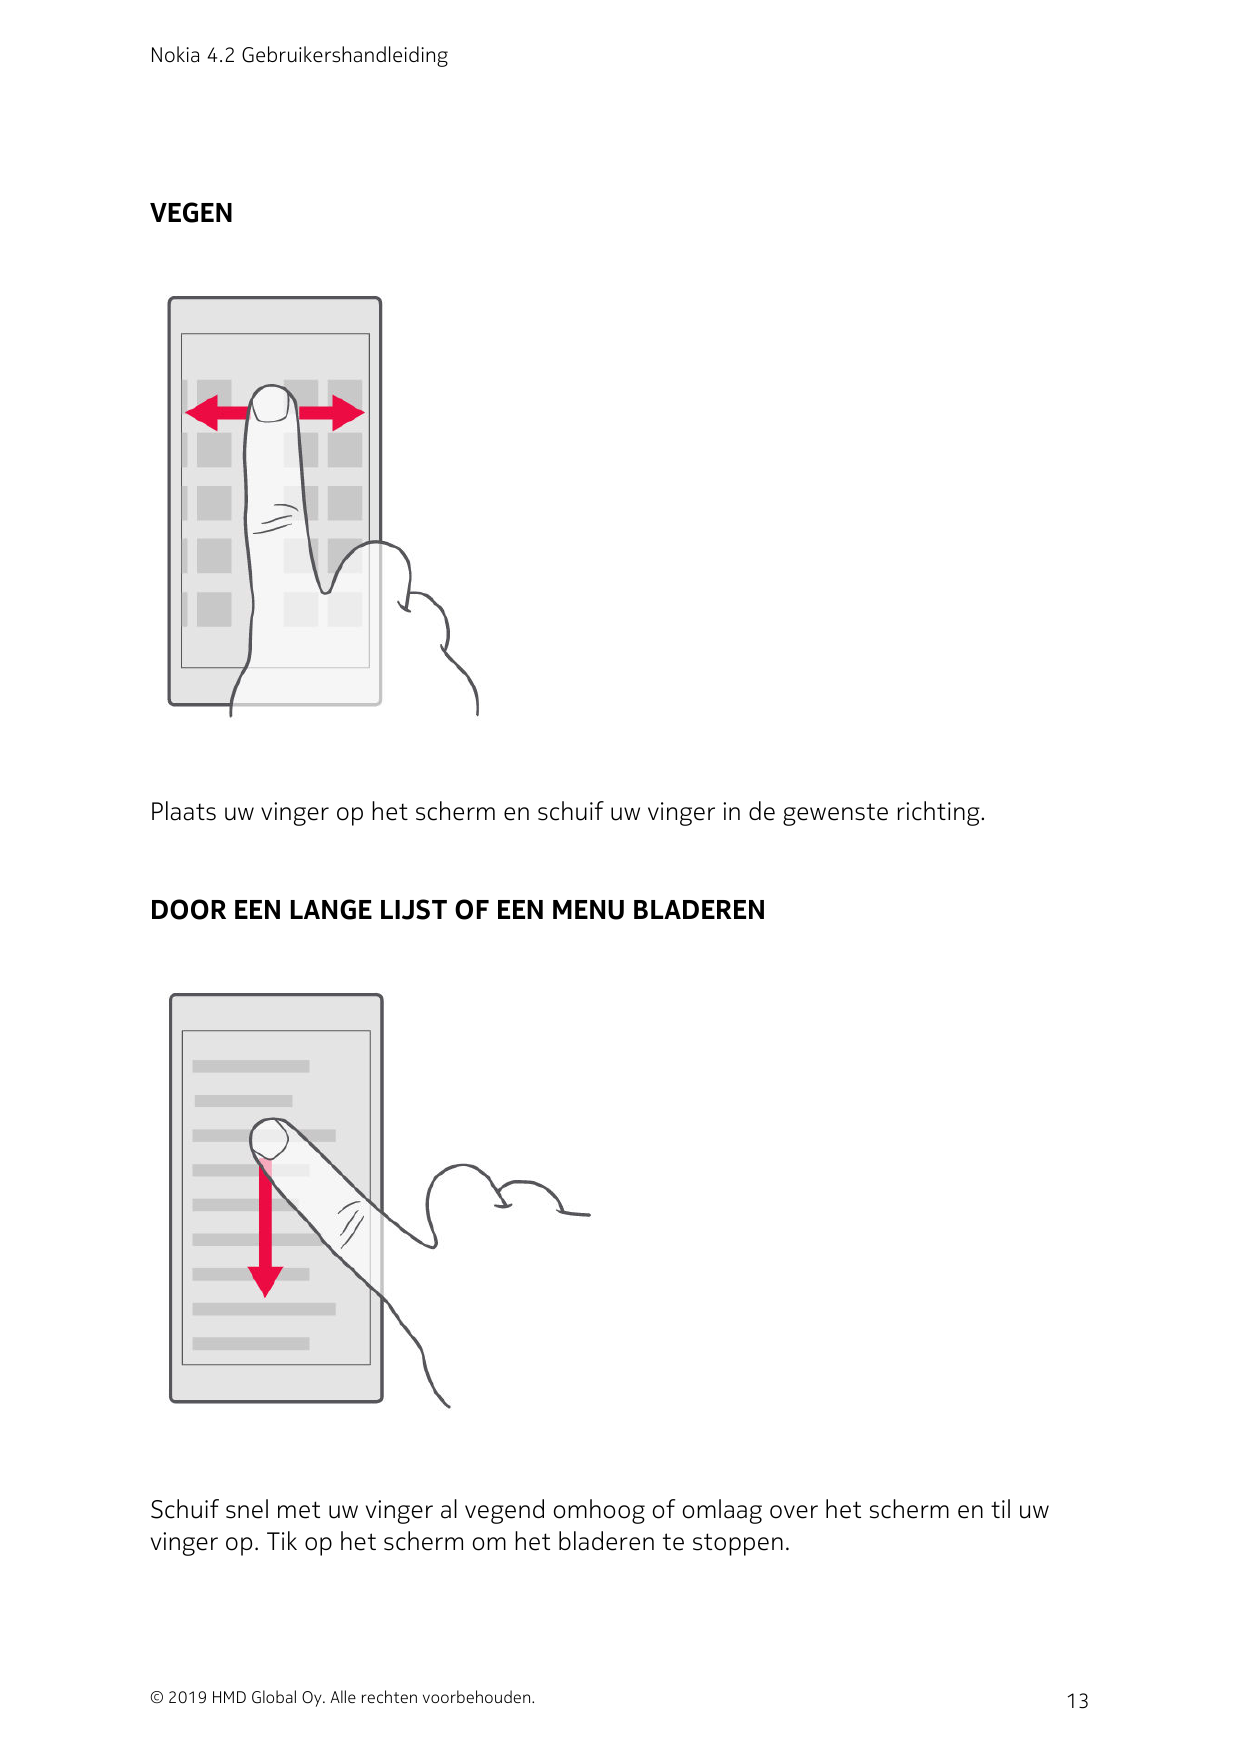 Nokia 4.2 GebruikershandleidingVEGENPlaats uw vinger op het scherm en schuif uw vinger in de gewenste richting.DOOR EEN LANGE LI